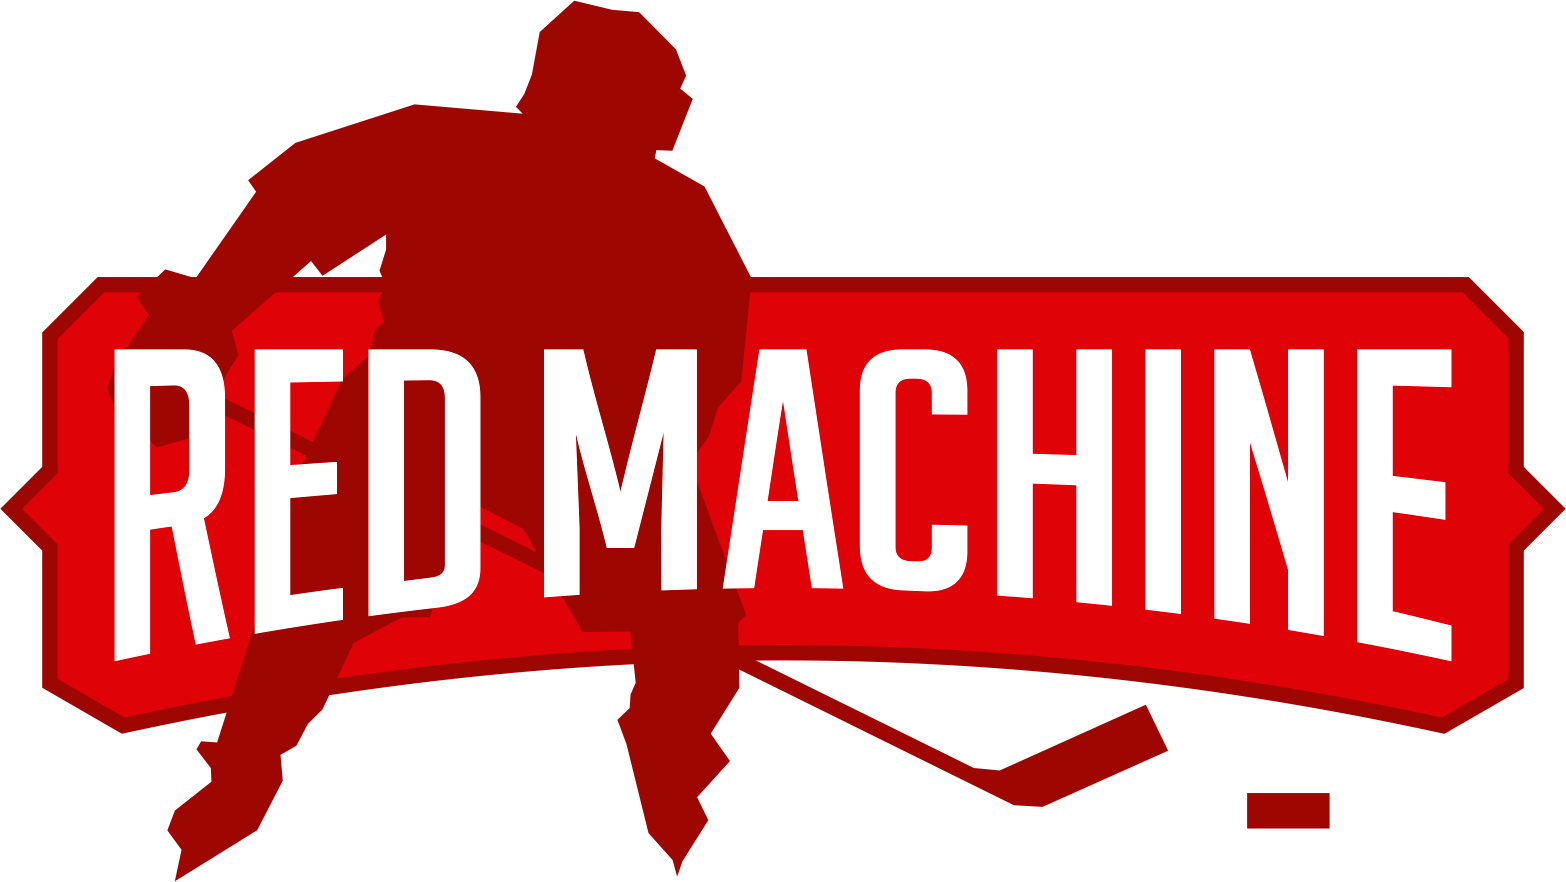 Red Machine